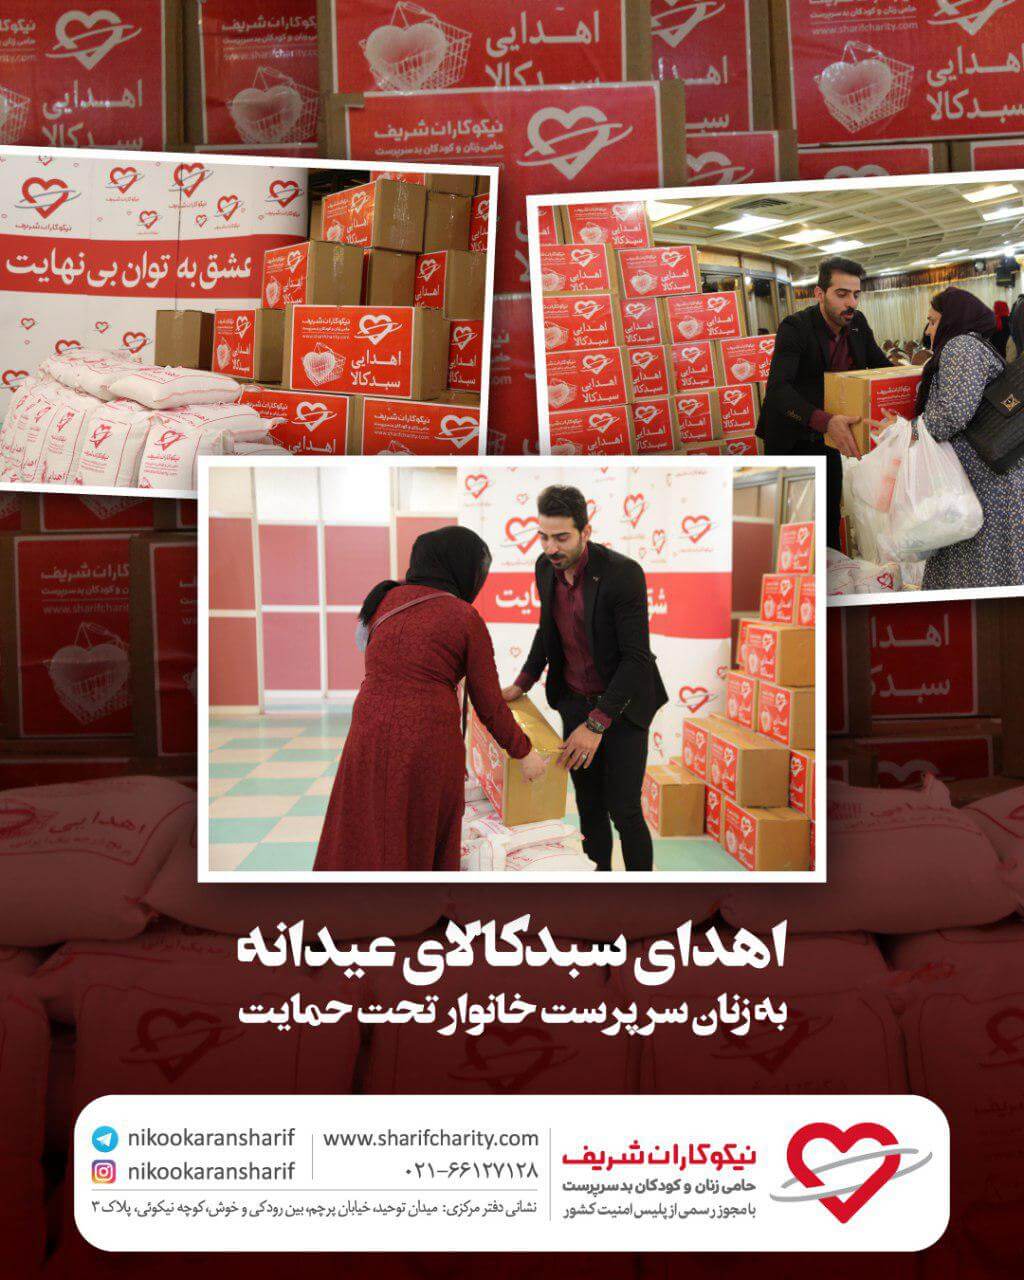 اهدای ۲۵۰۰ سبد کالای خانوار عیدانه به مددجویان